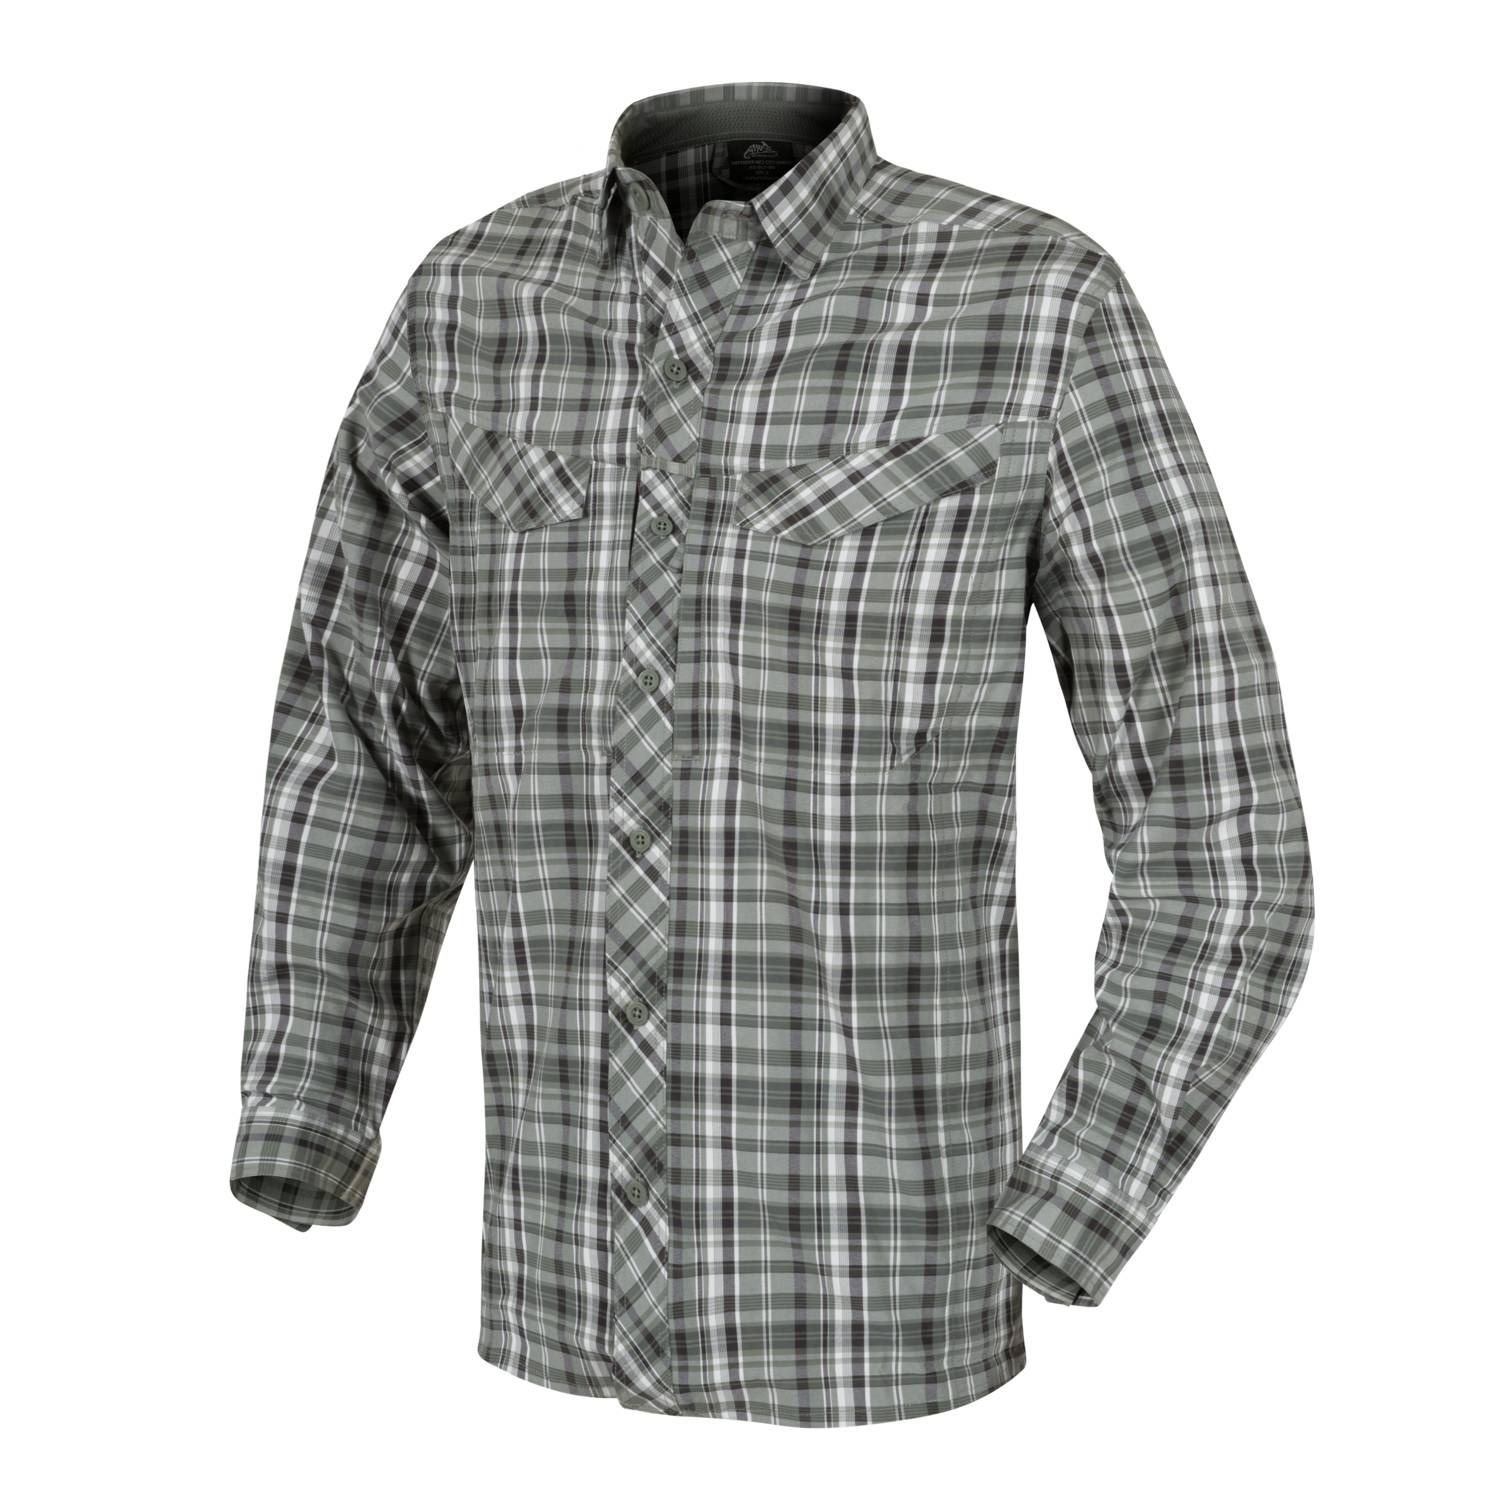 Košile DEFENDER MK2 CITY SHIRT® PINE PLAID Velikost: M